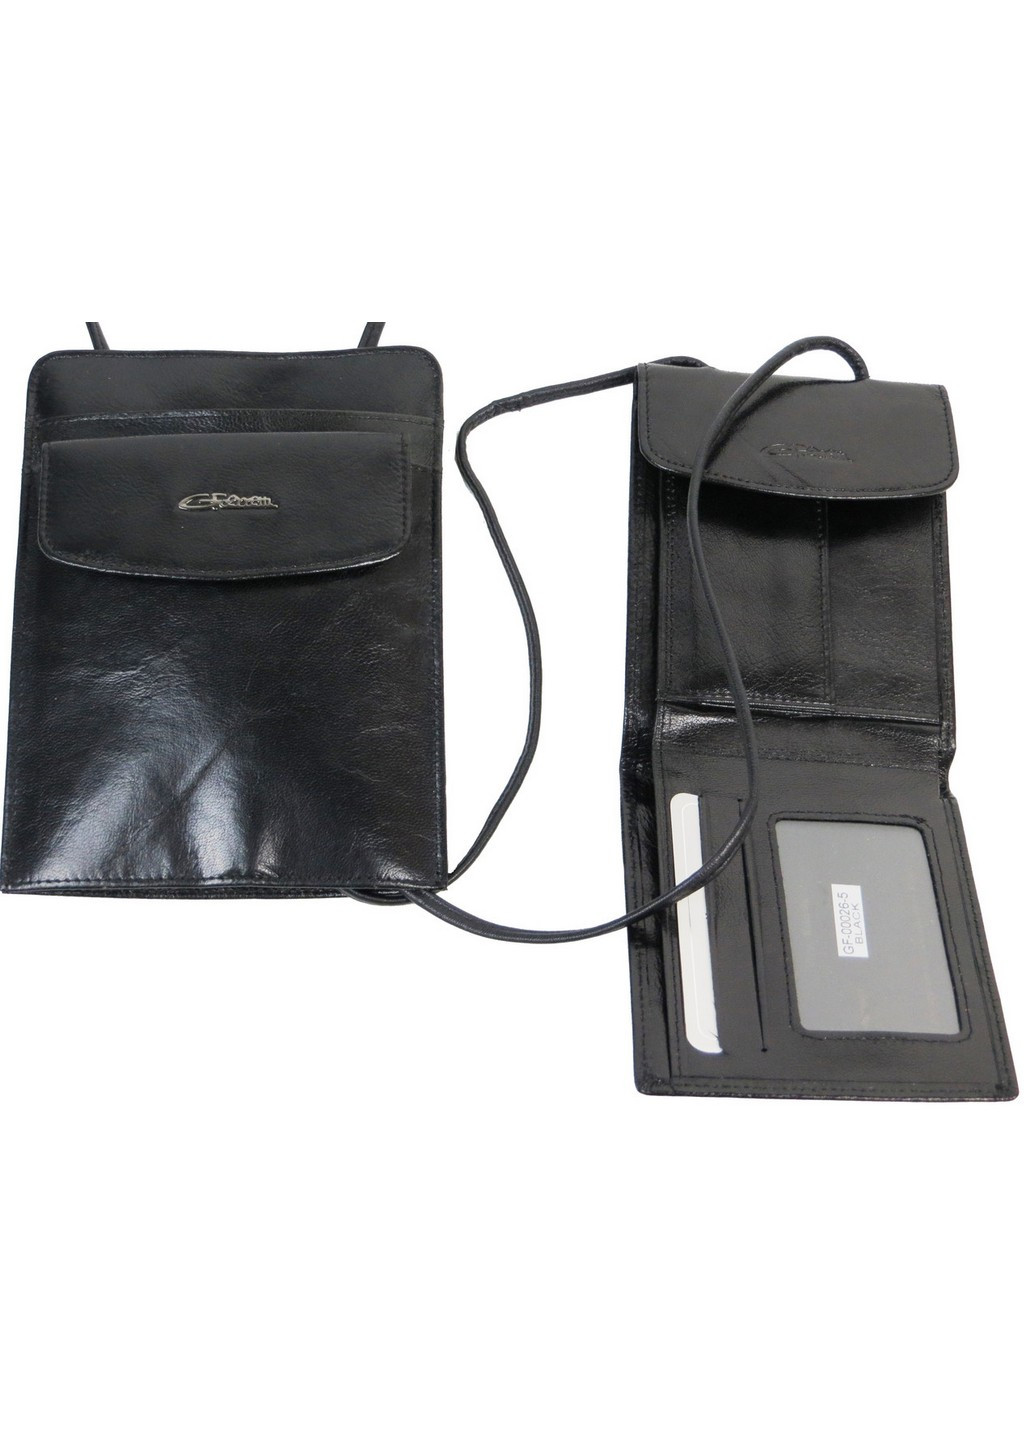 Уникальный набор из кожаной сумки и портмоне 16,5х12,5х1(12,5х10х1) см Giorgio Ferretti (255405420)